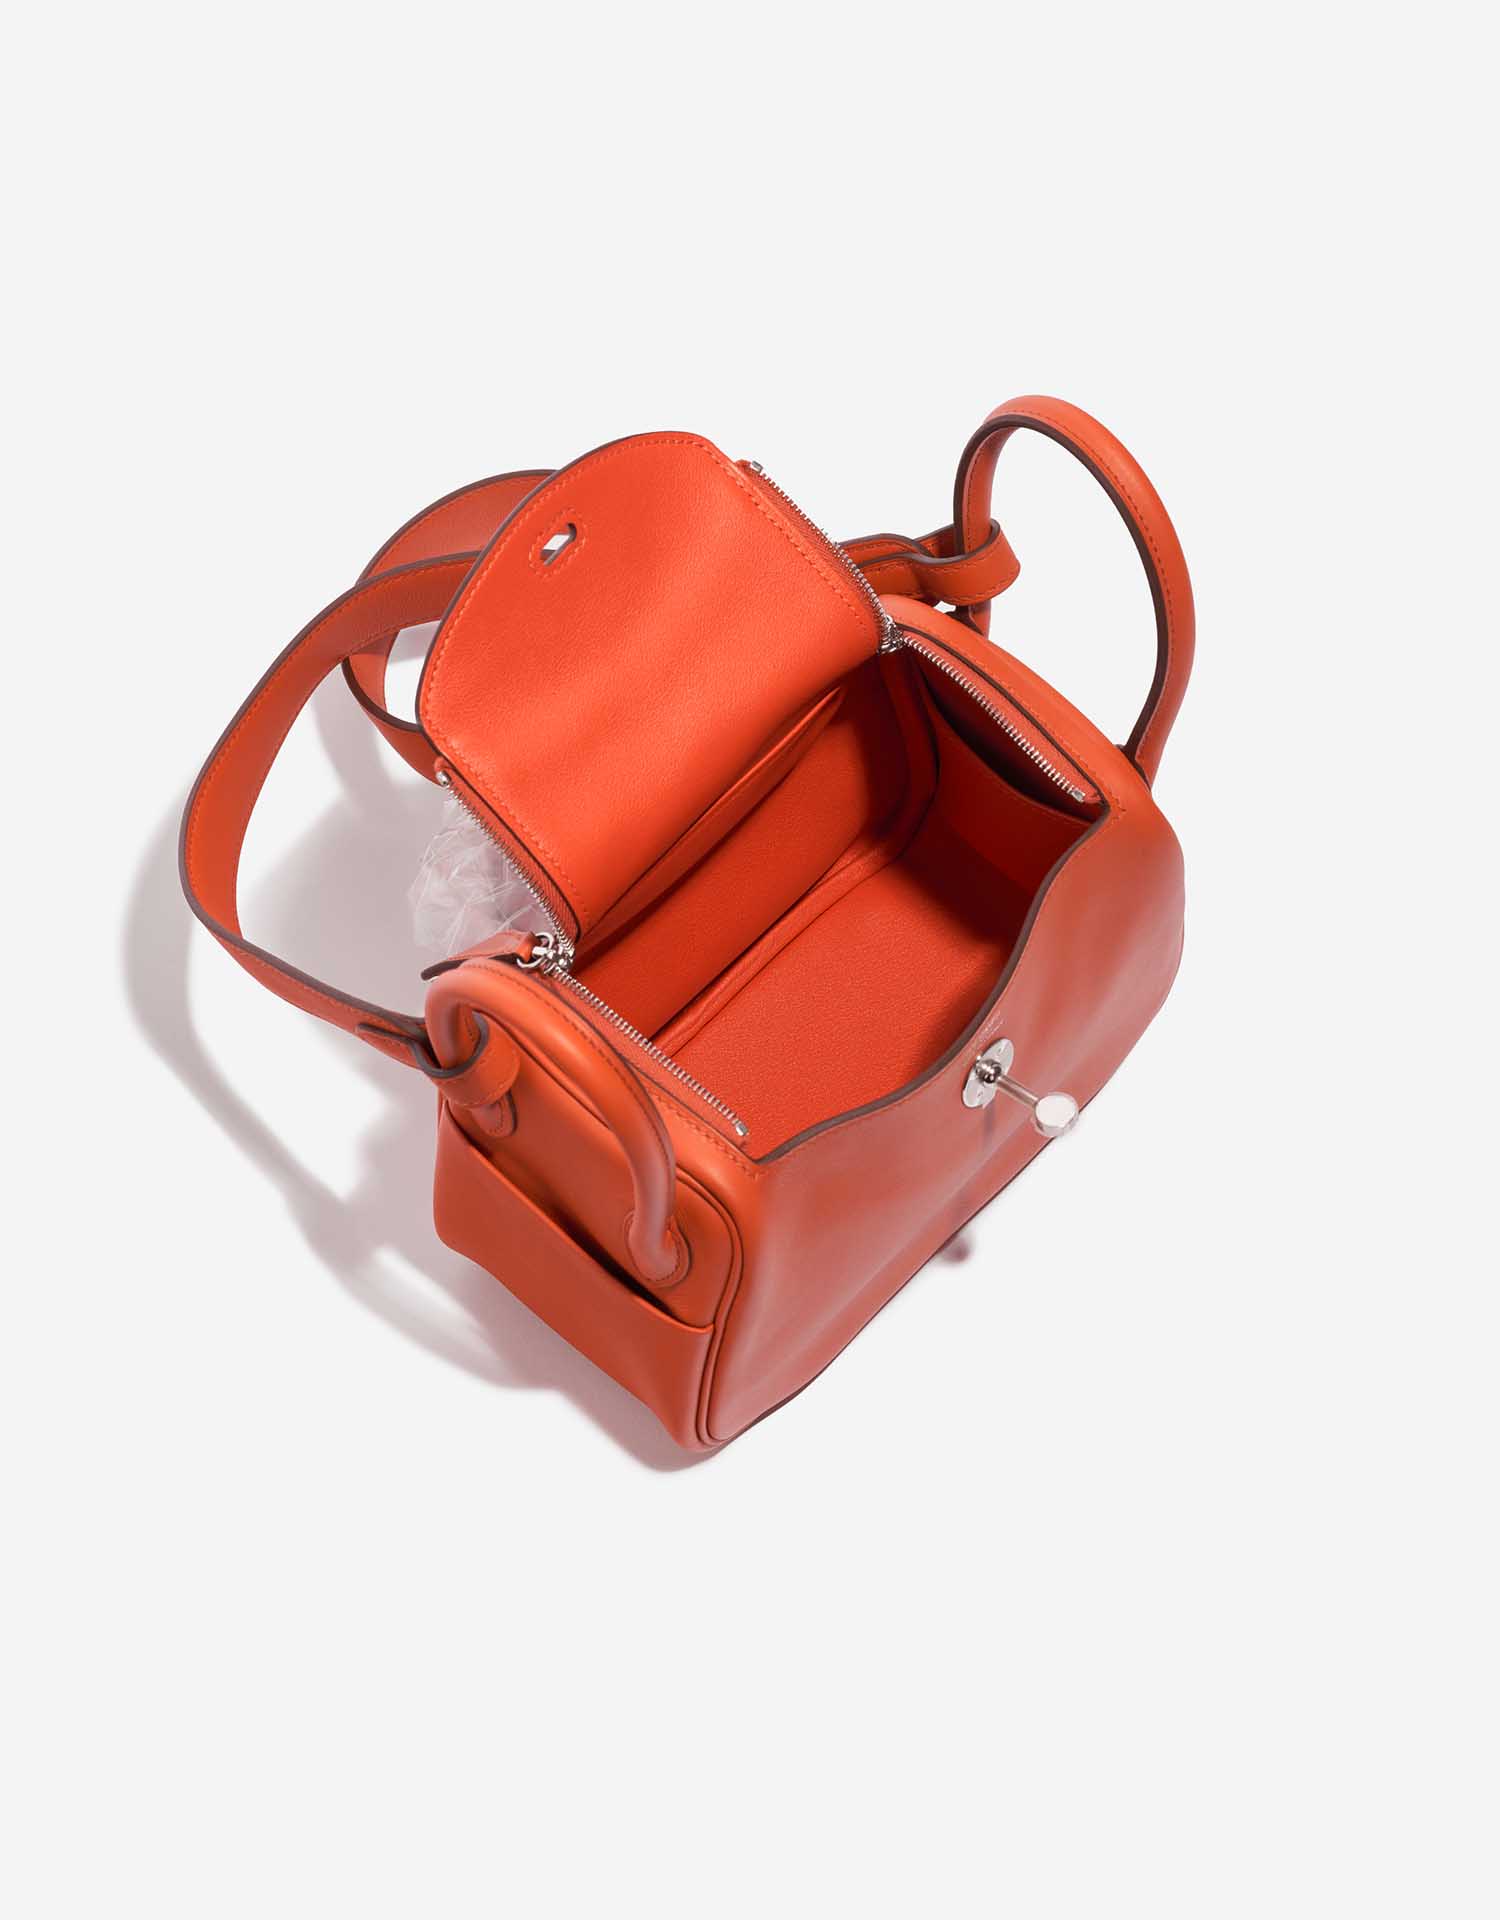 Assisi leather tote bag, Hermès Lindy Handbag 397955